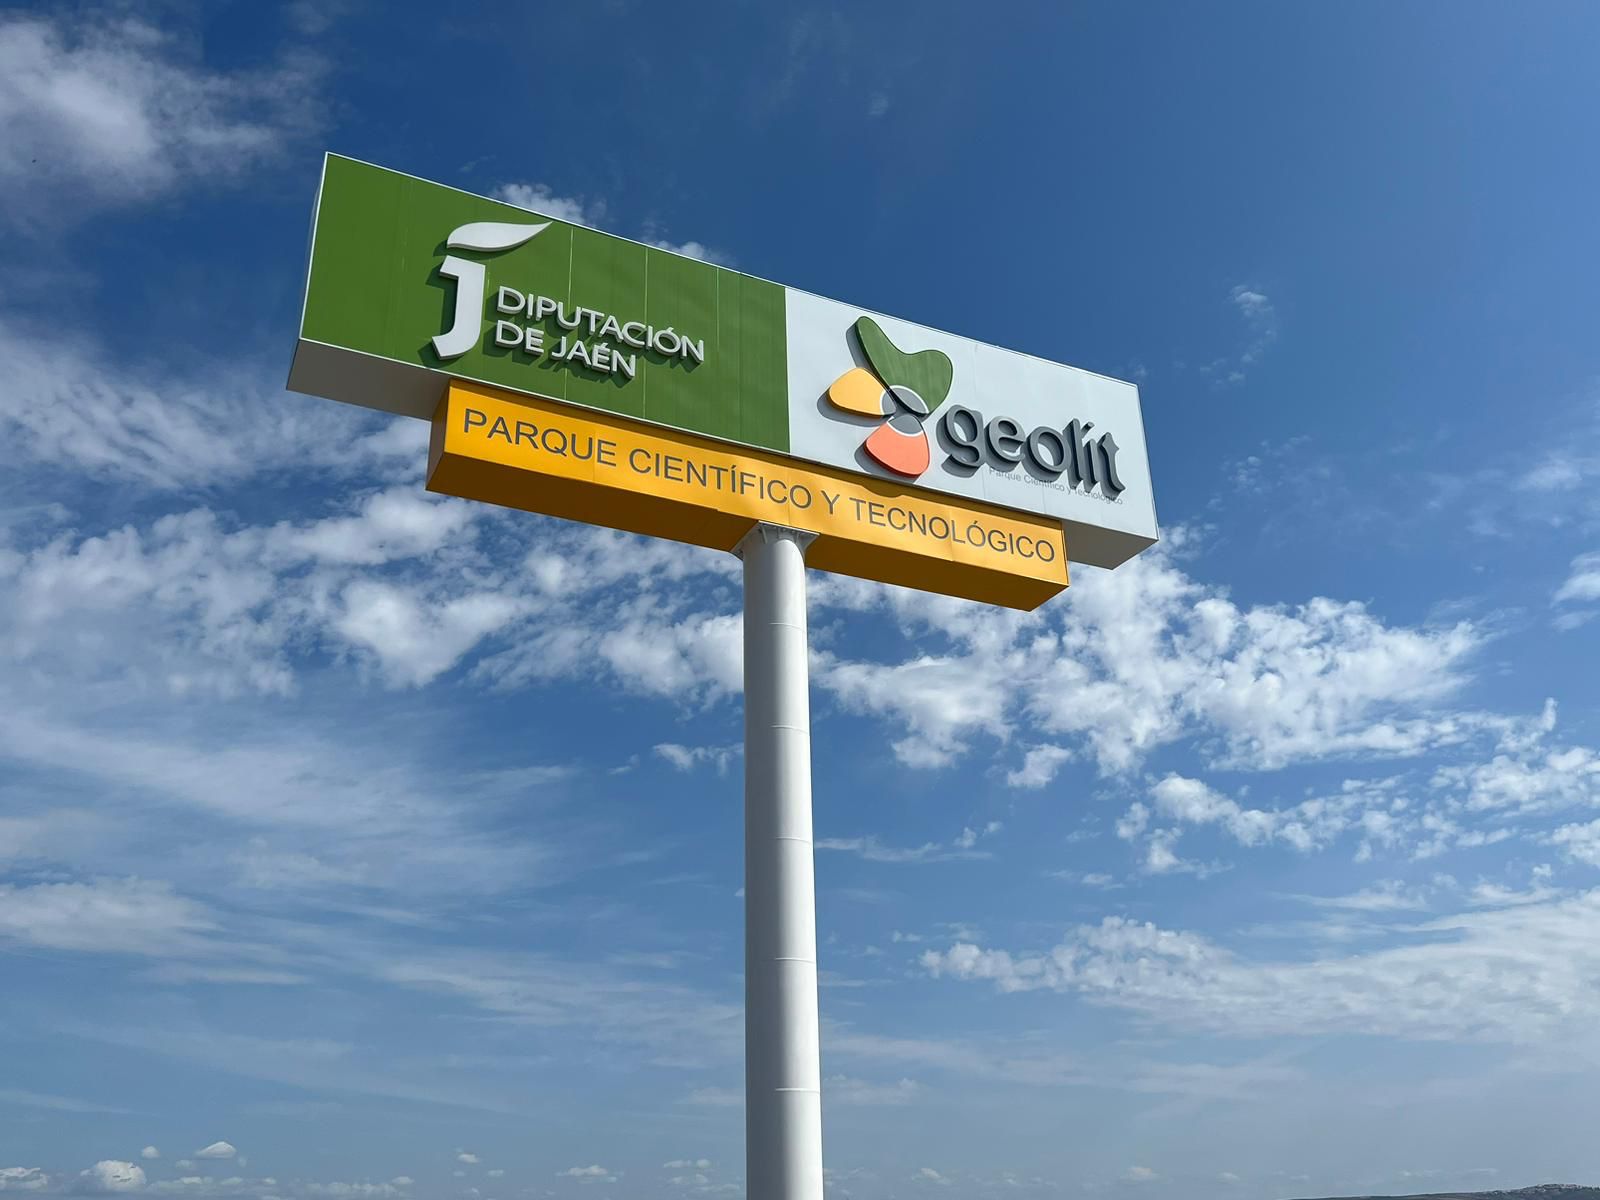 La Diputación de Jaén instala un monoposte en Geolit para mejorar la visibilidad del parque científico tecnológico